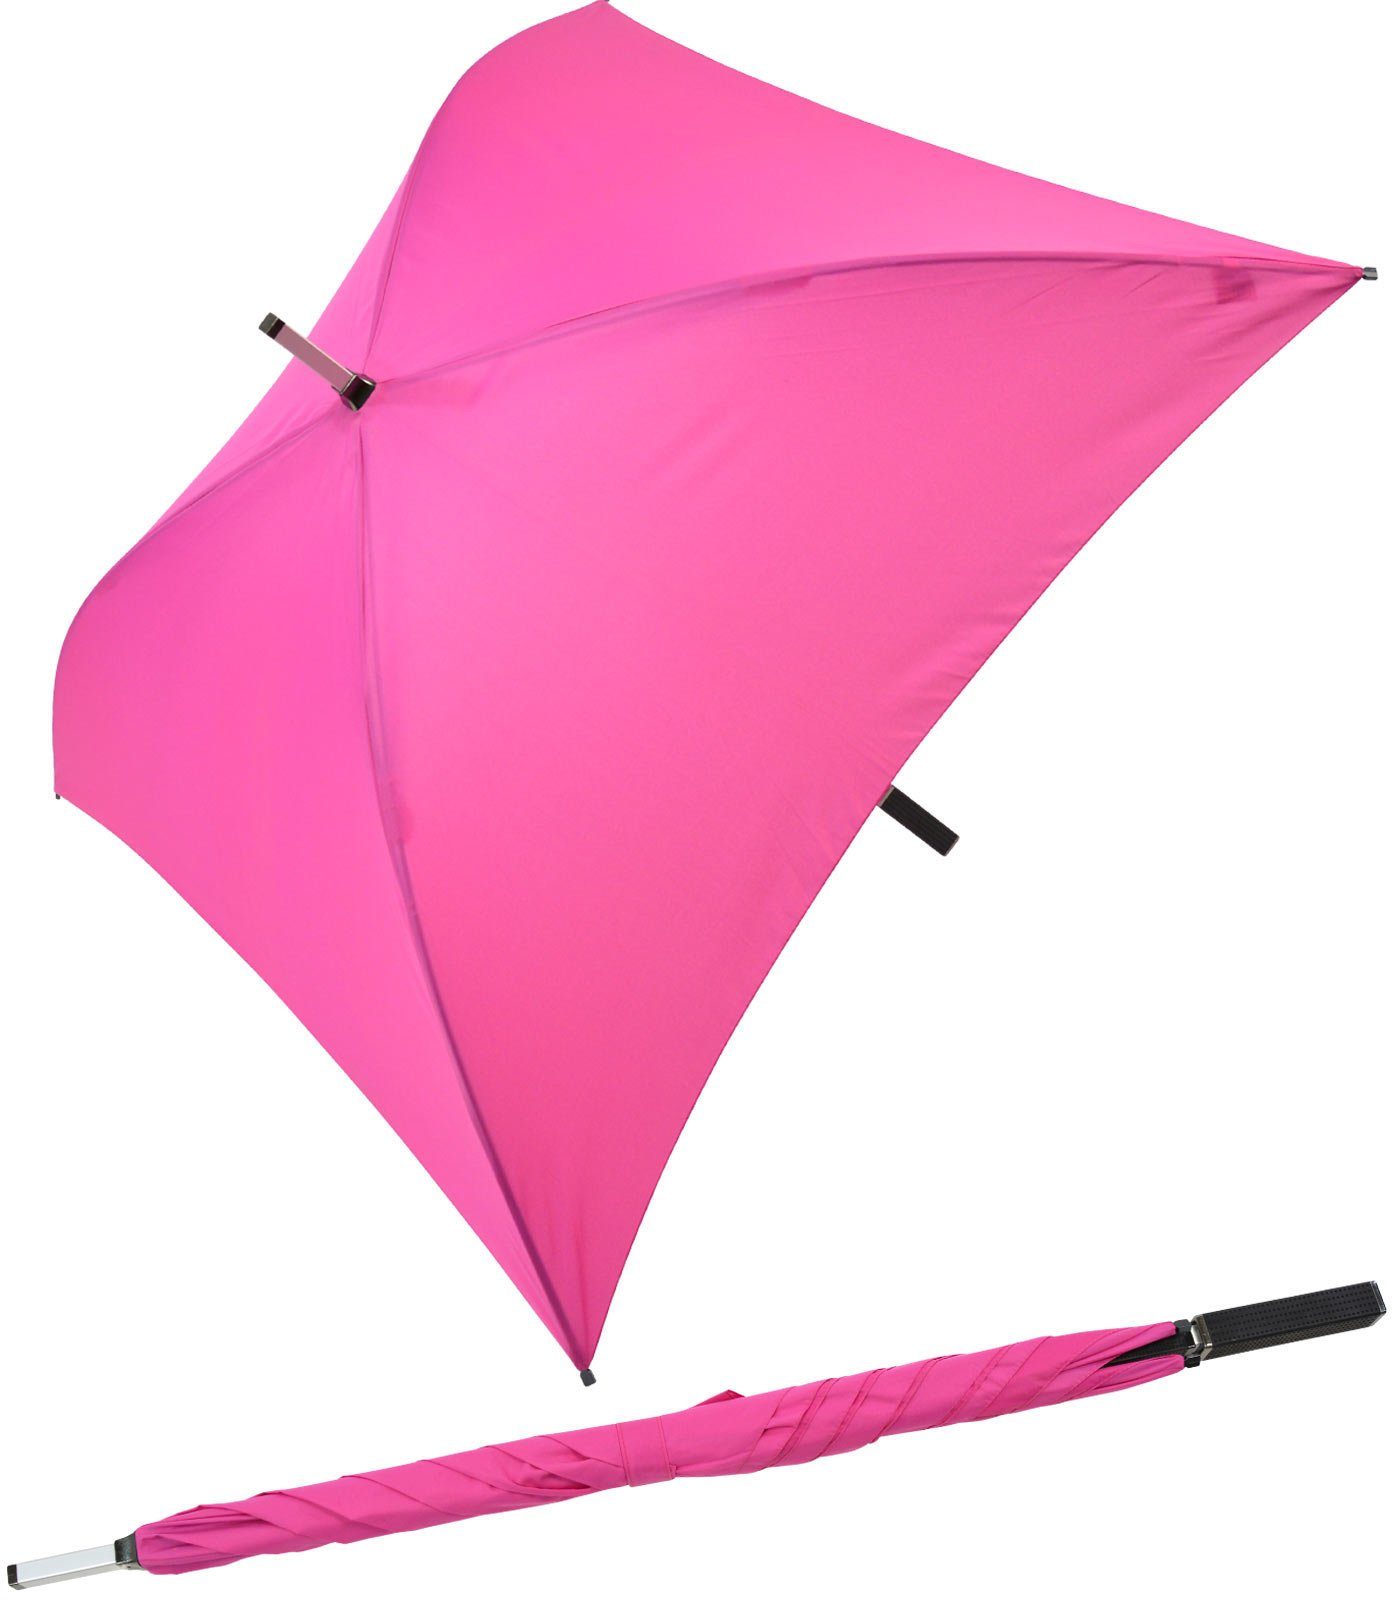 Impliva Langregenschirm All quadratischer ganz voll Regenschirm pink Square® besondere der Regenschirm